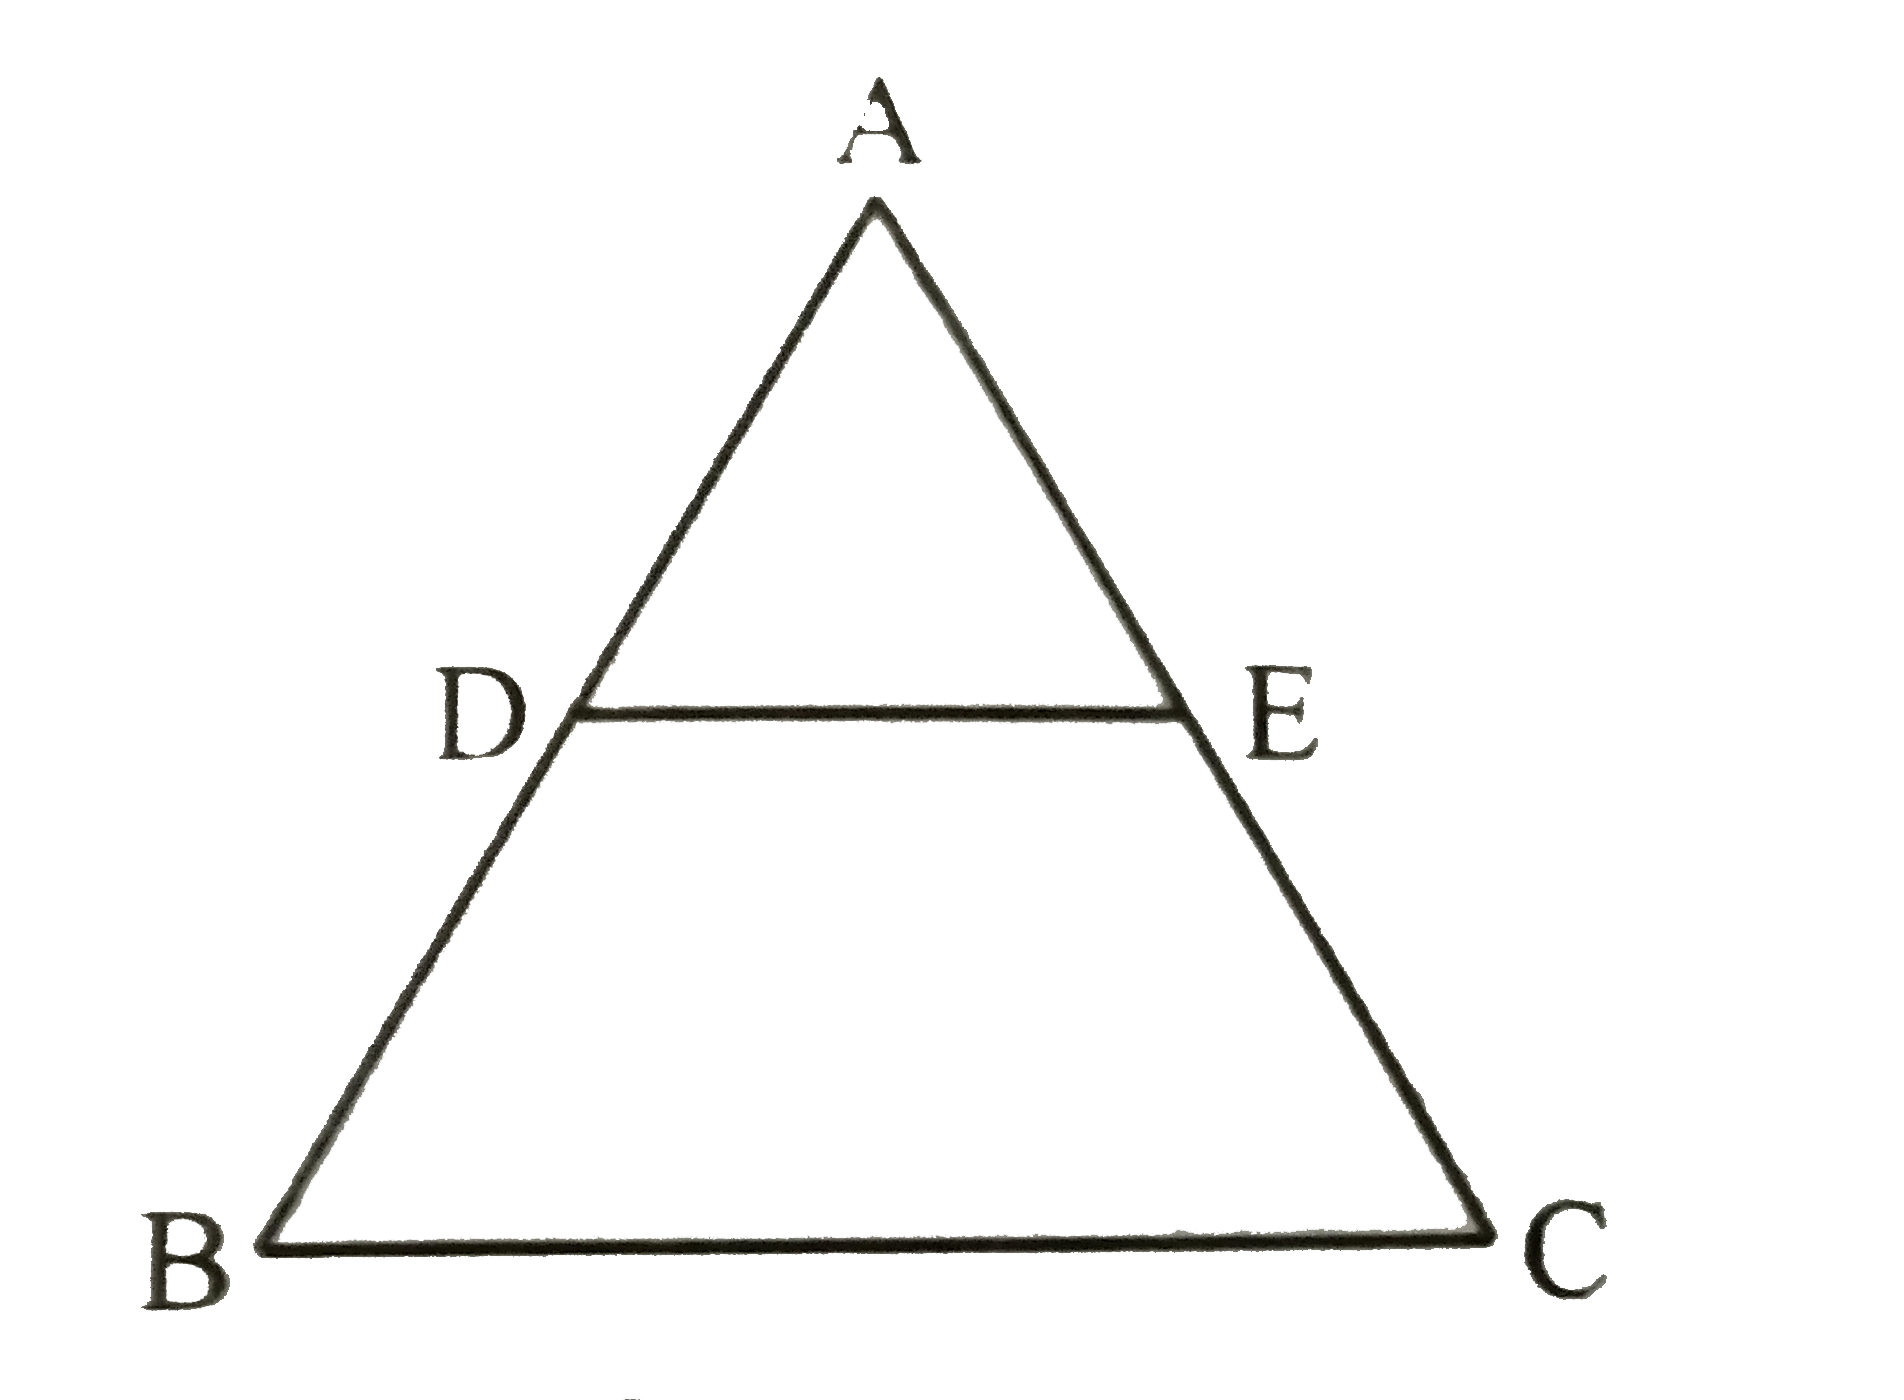 दी गई आकृति में DE।।BC तथा (AD)/(DB) = (3)/(5) है यदि AC = 4.8 सेमी है तो AE  ज्ञात कीजिए ।